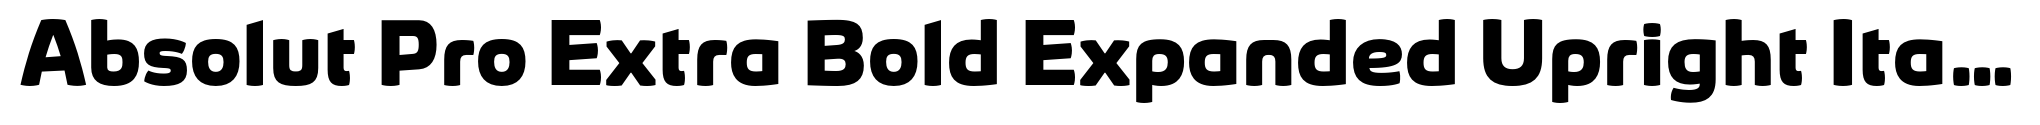 Absolut Pro Extra Bold Expanded Upright Italic image